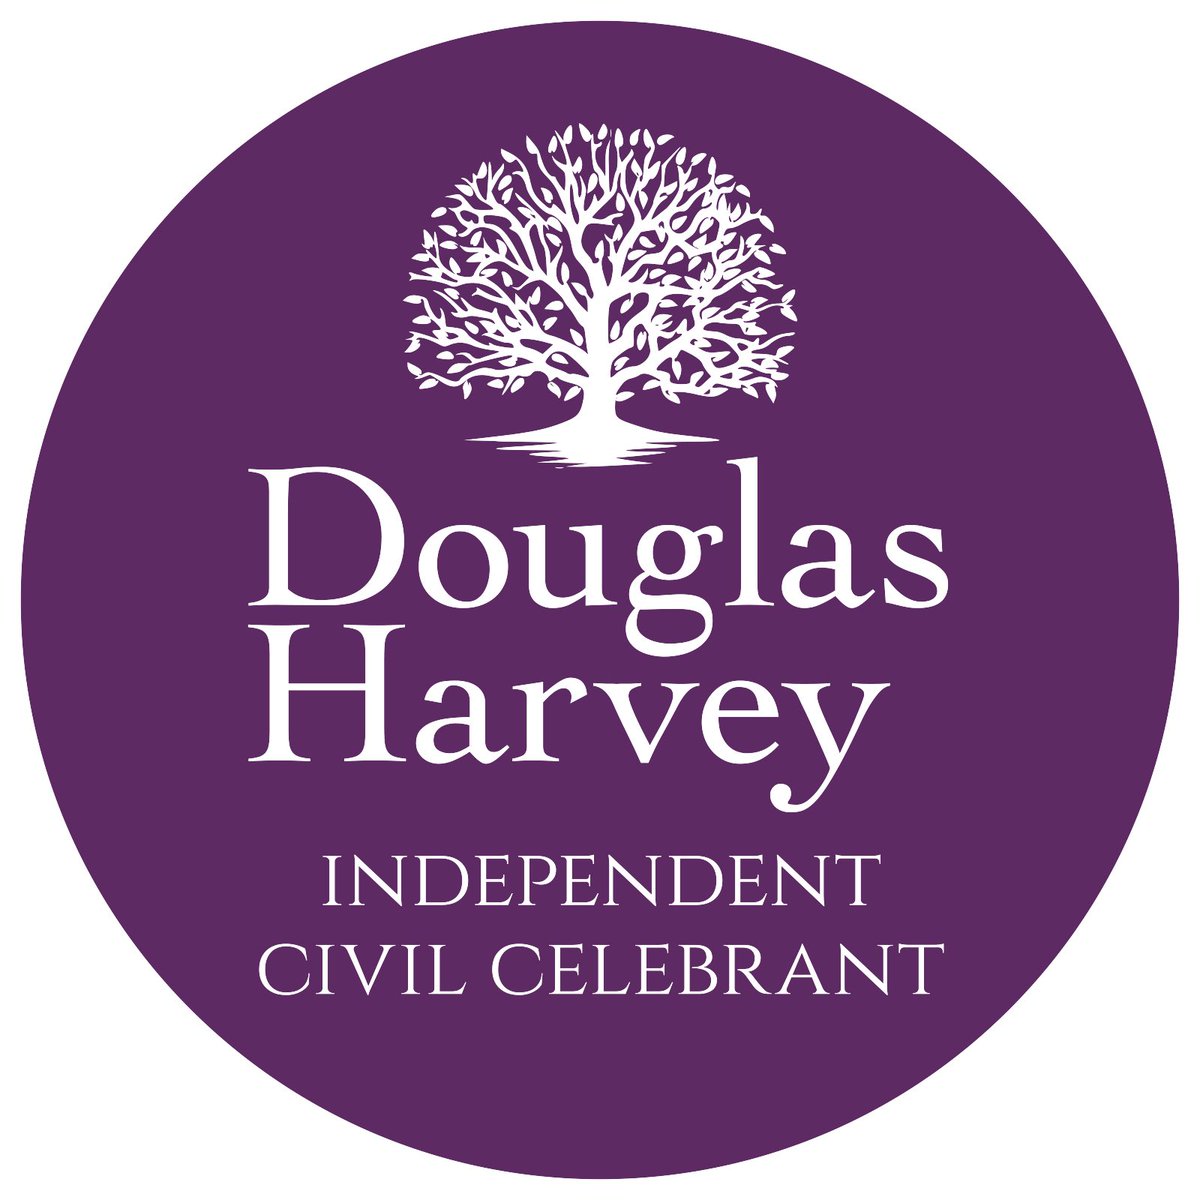 Douglas Harvey Civil Celebrant